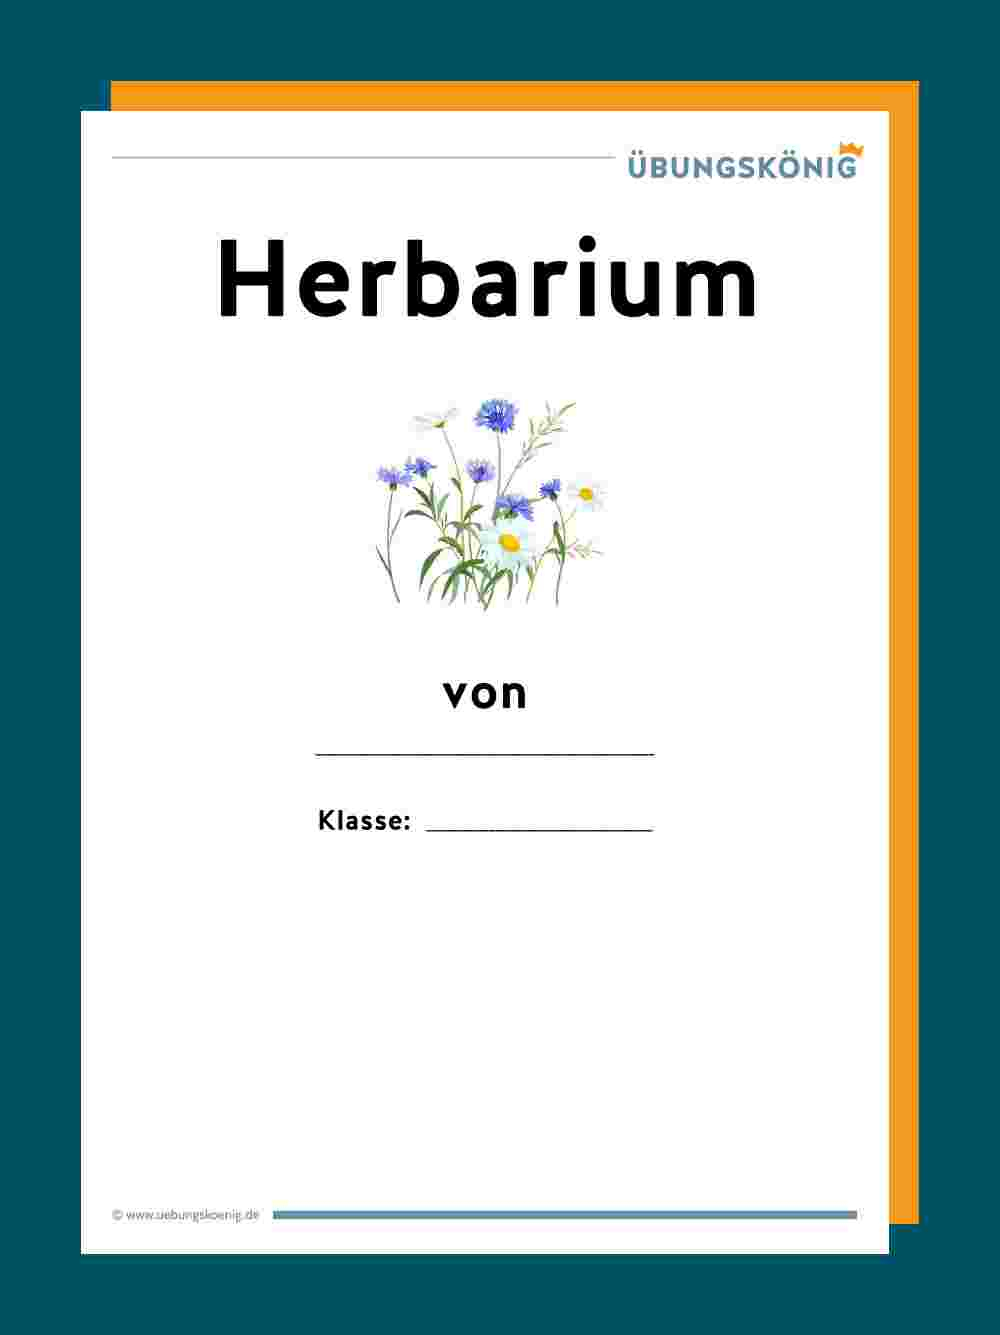 Herbarium in Herbarium Beschriftungsvorlage Muster